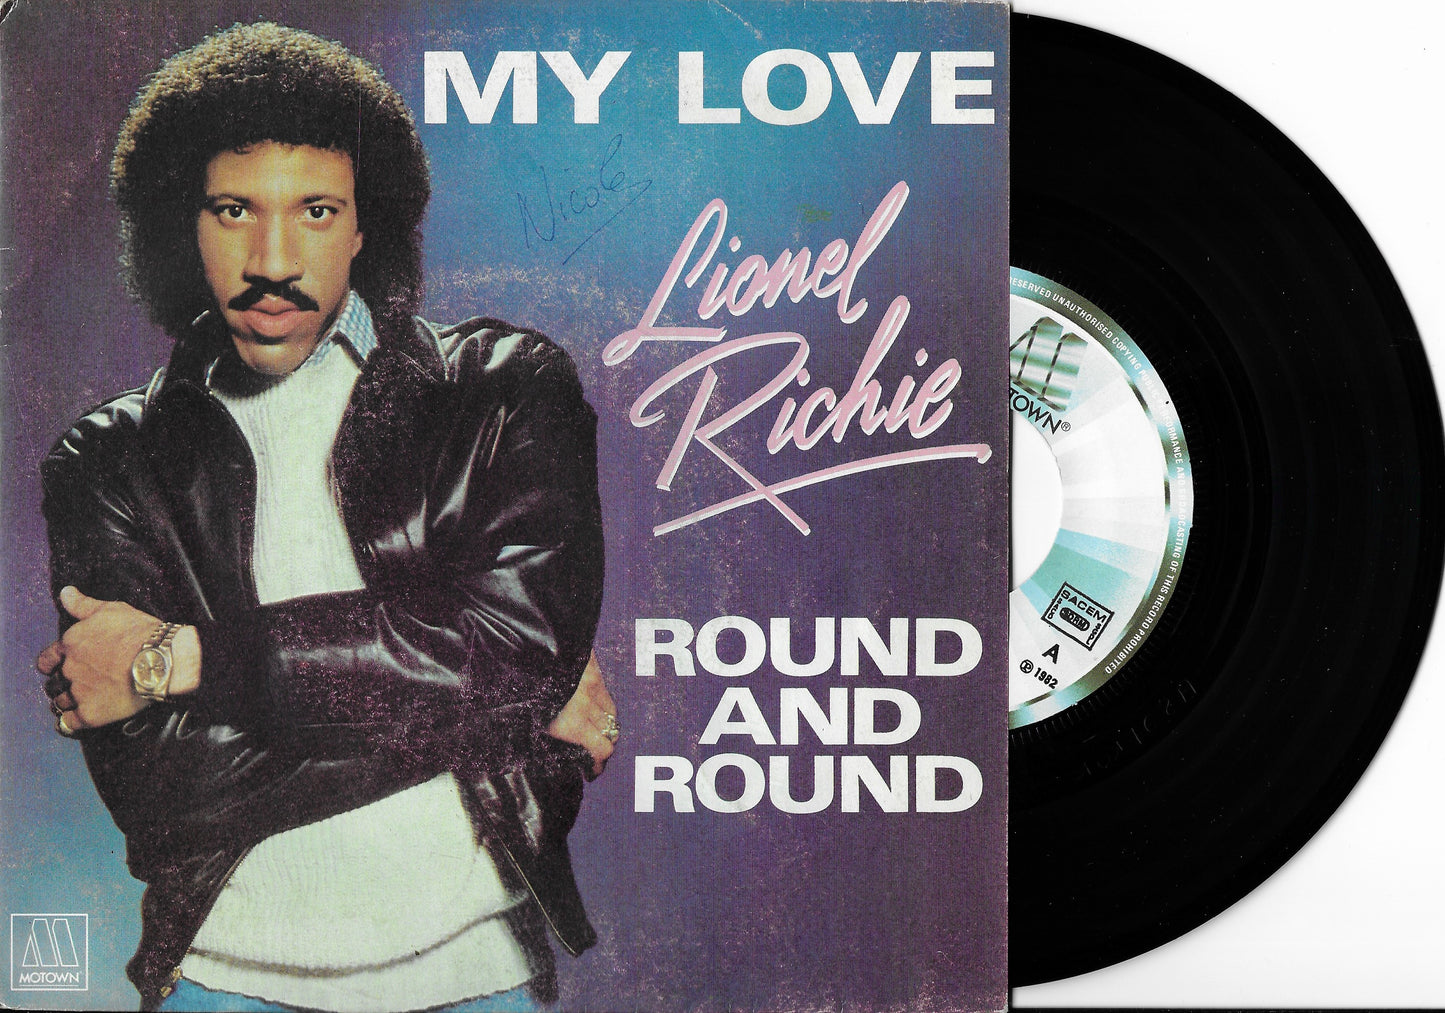 LIONEL RICHIE - My Love / Round And Round